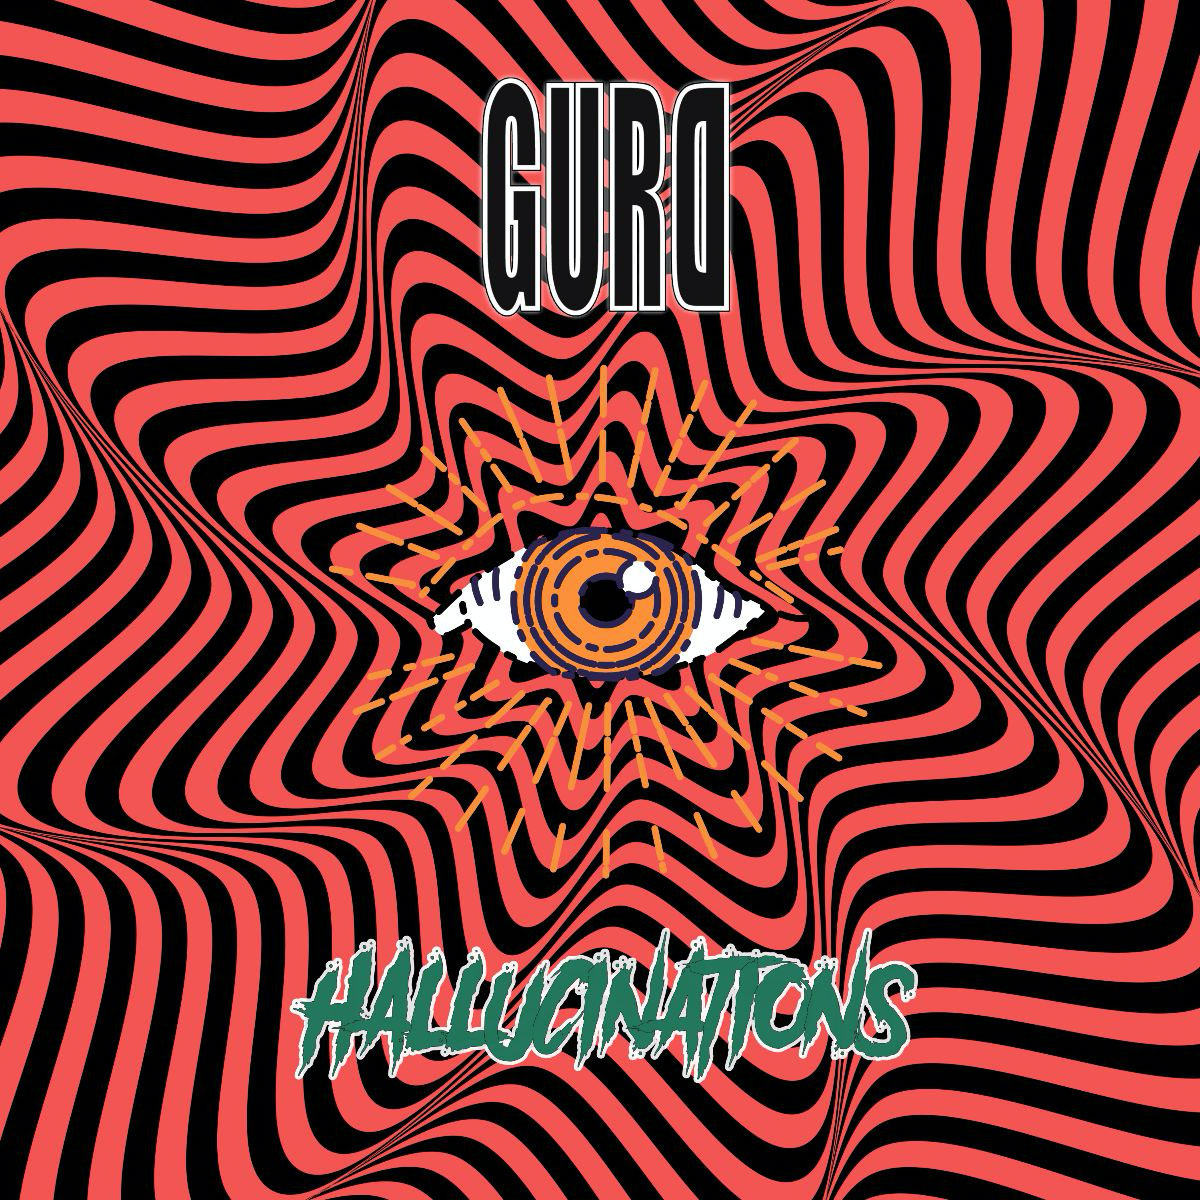 gurd.hallucinations-album-cover